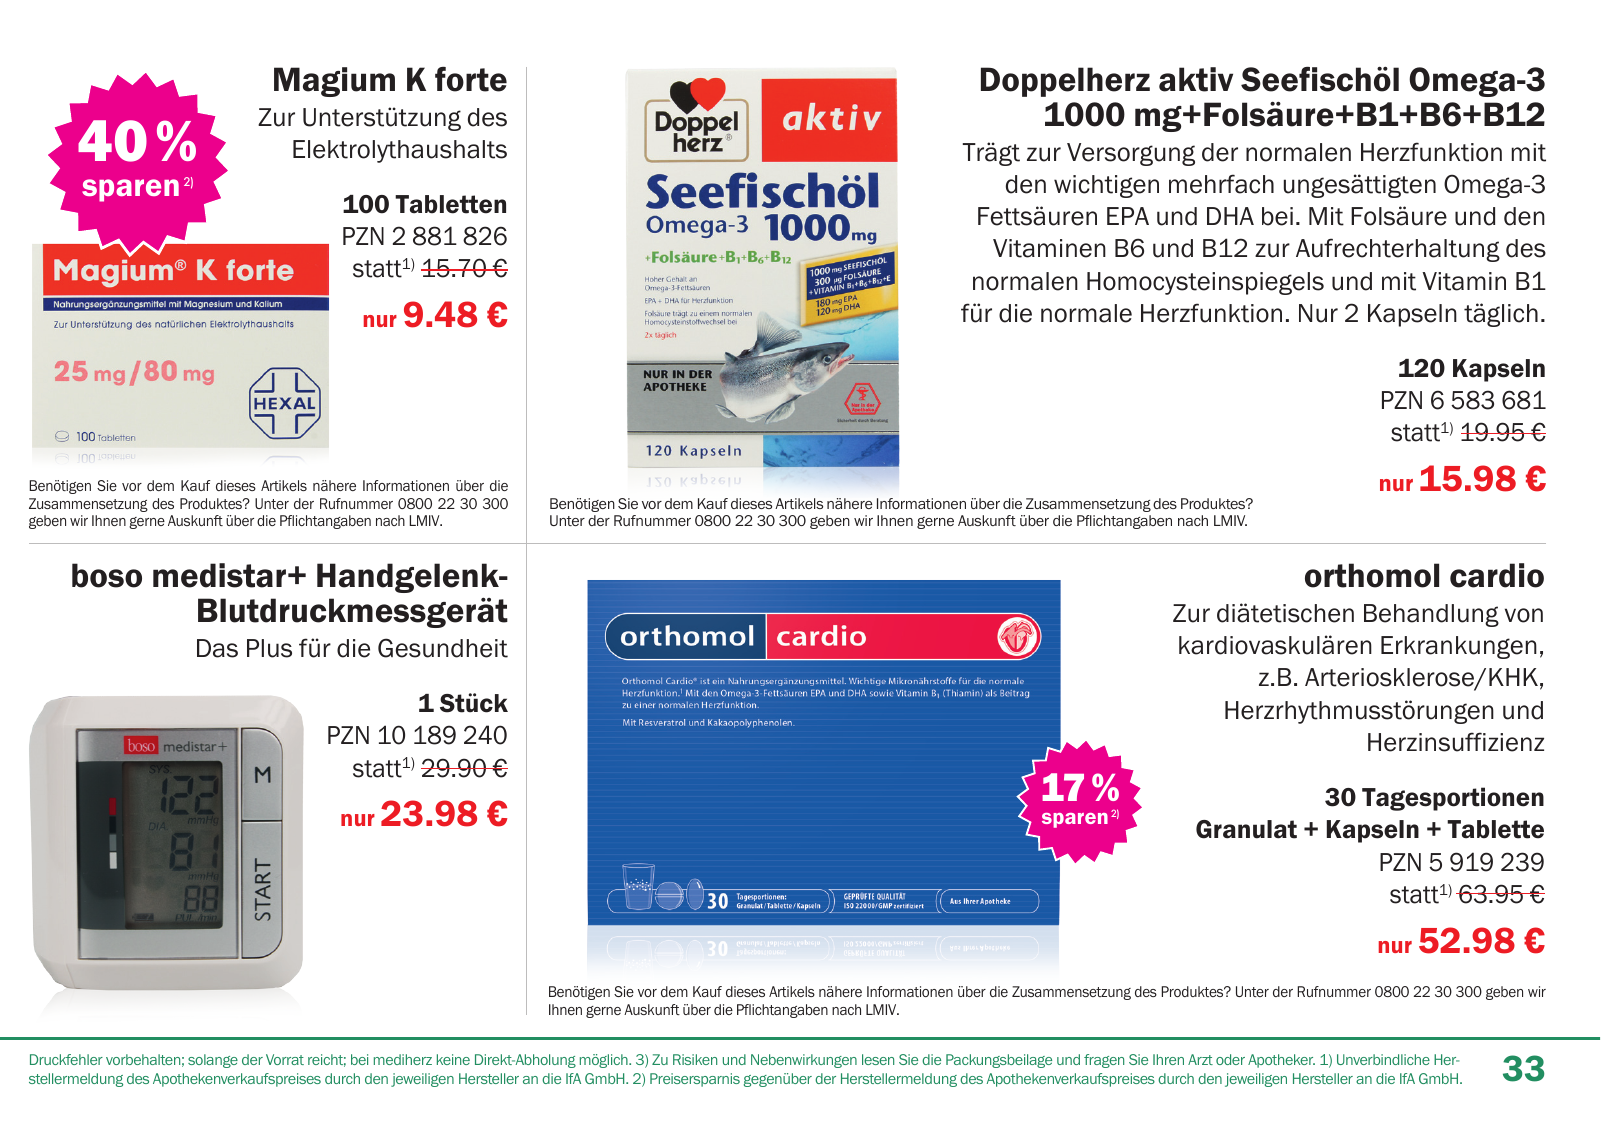 Vorschau Mediherz Katalog Herbst/Winter 2015/16 Seite 33